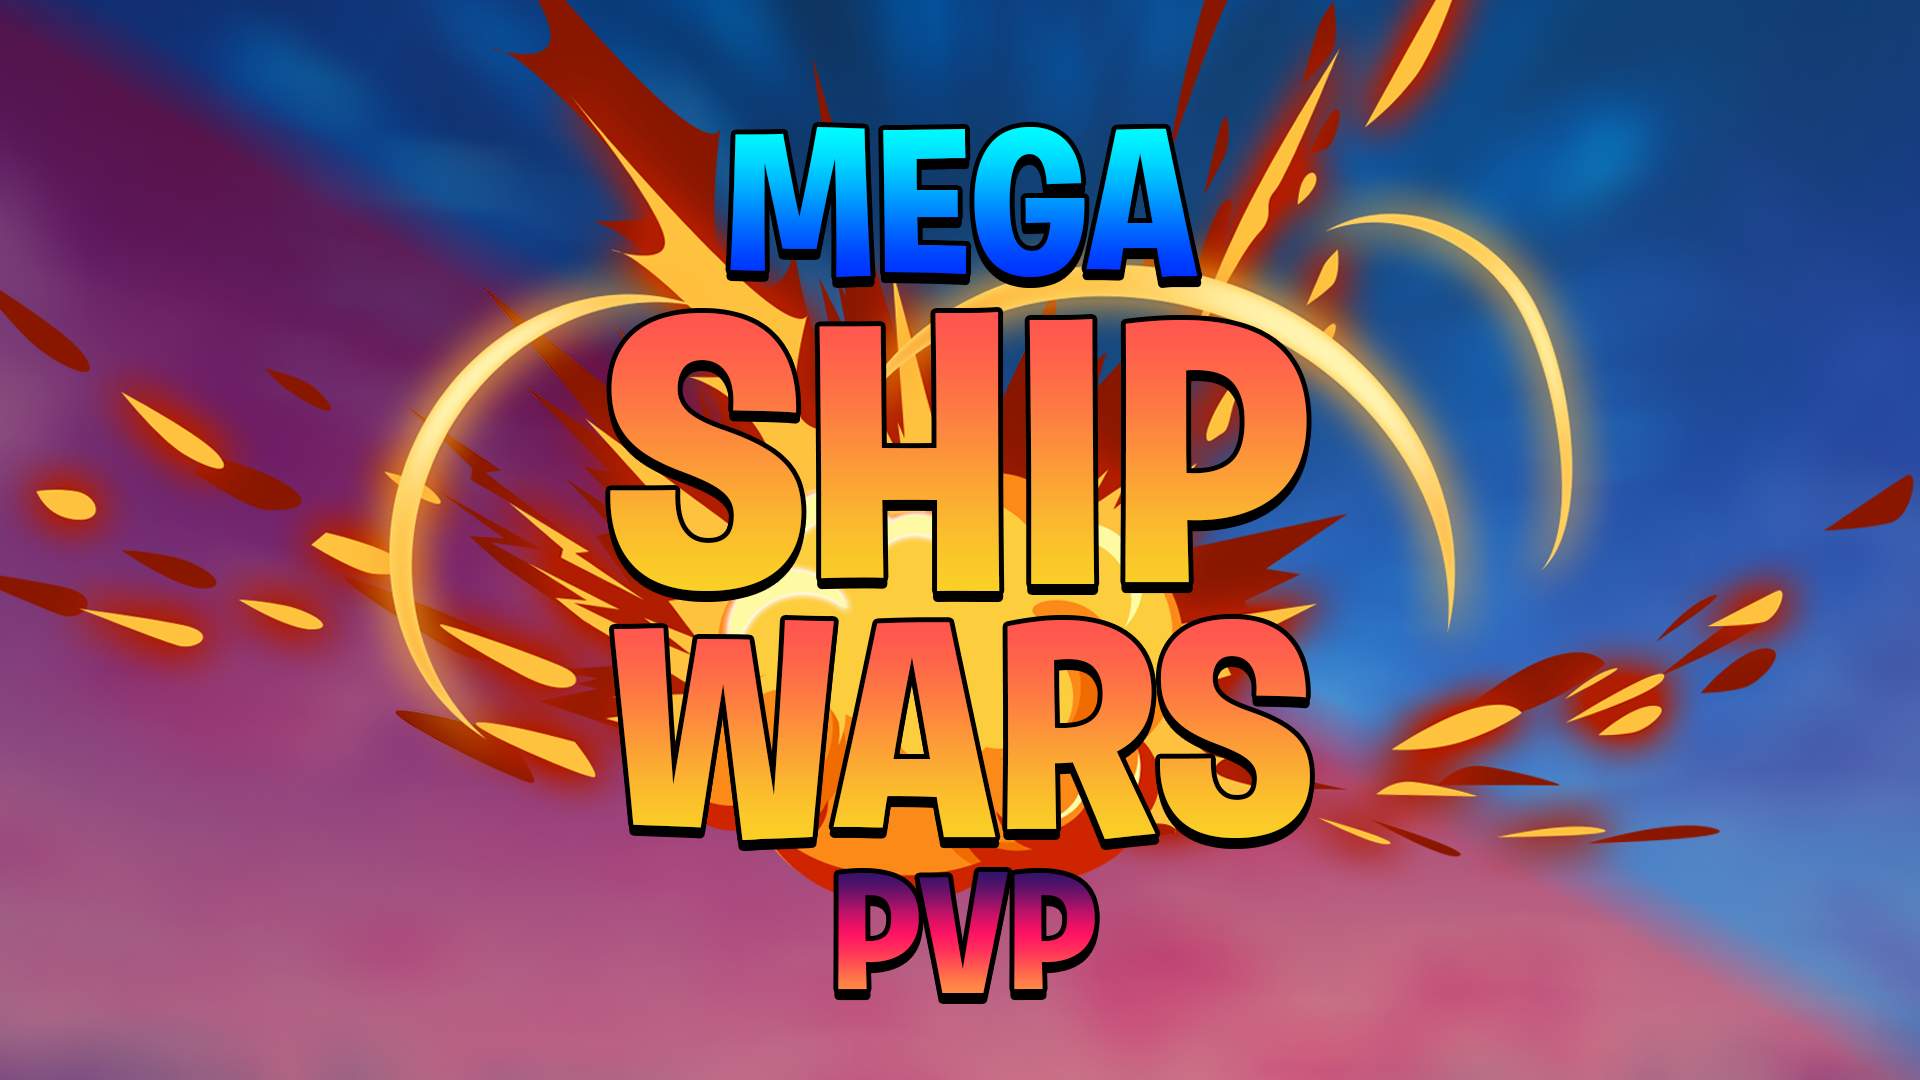 MEGA SHIP WARS PVP 💥